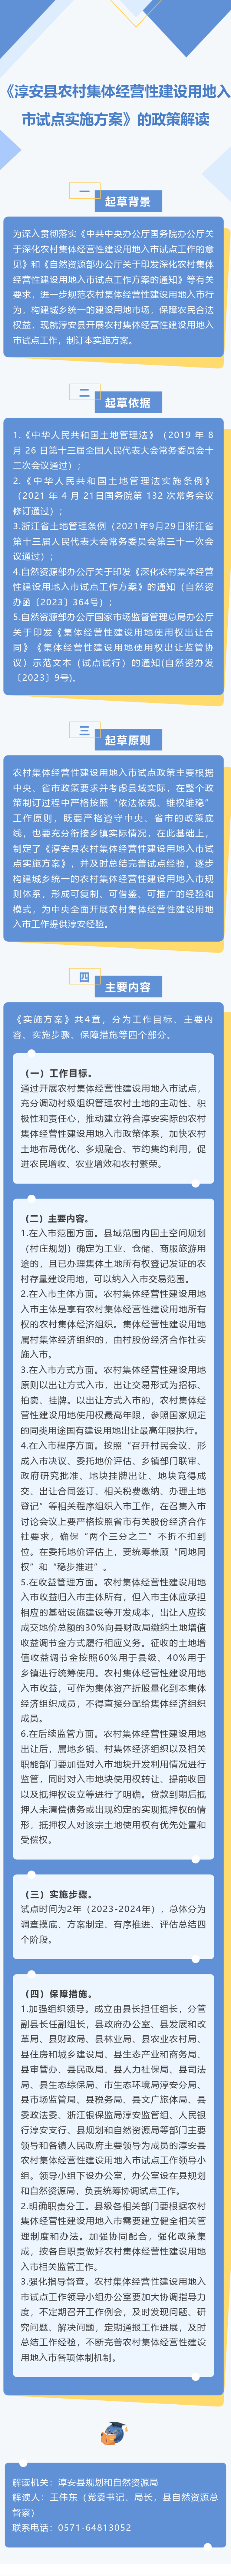 《淳安县农村集体经营性建设用地入市试点实施方案》的政策解读.png